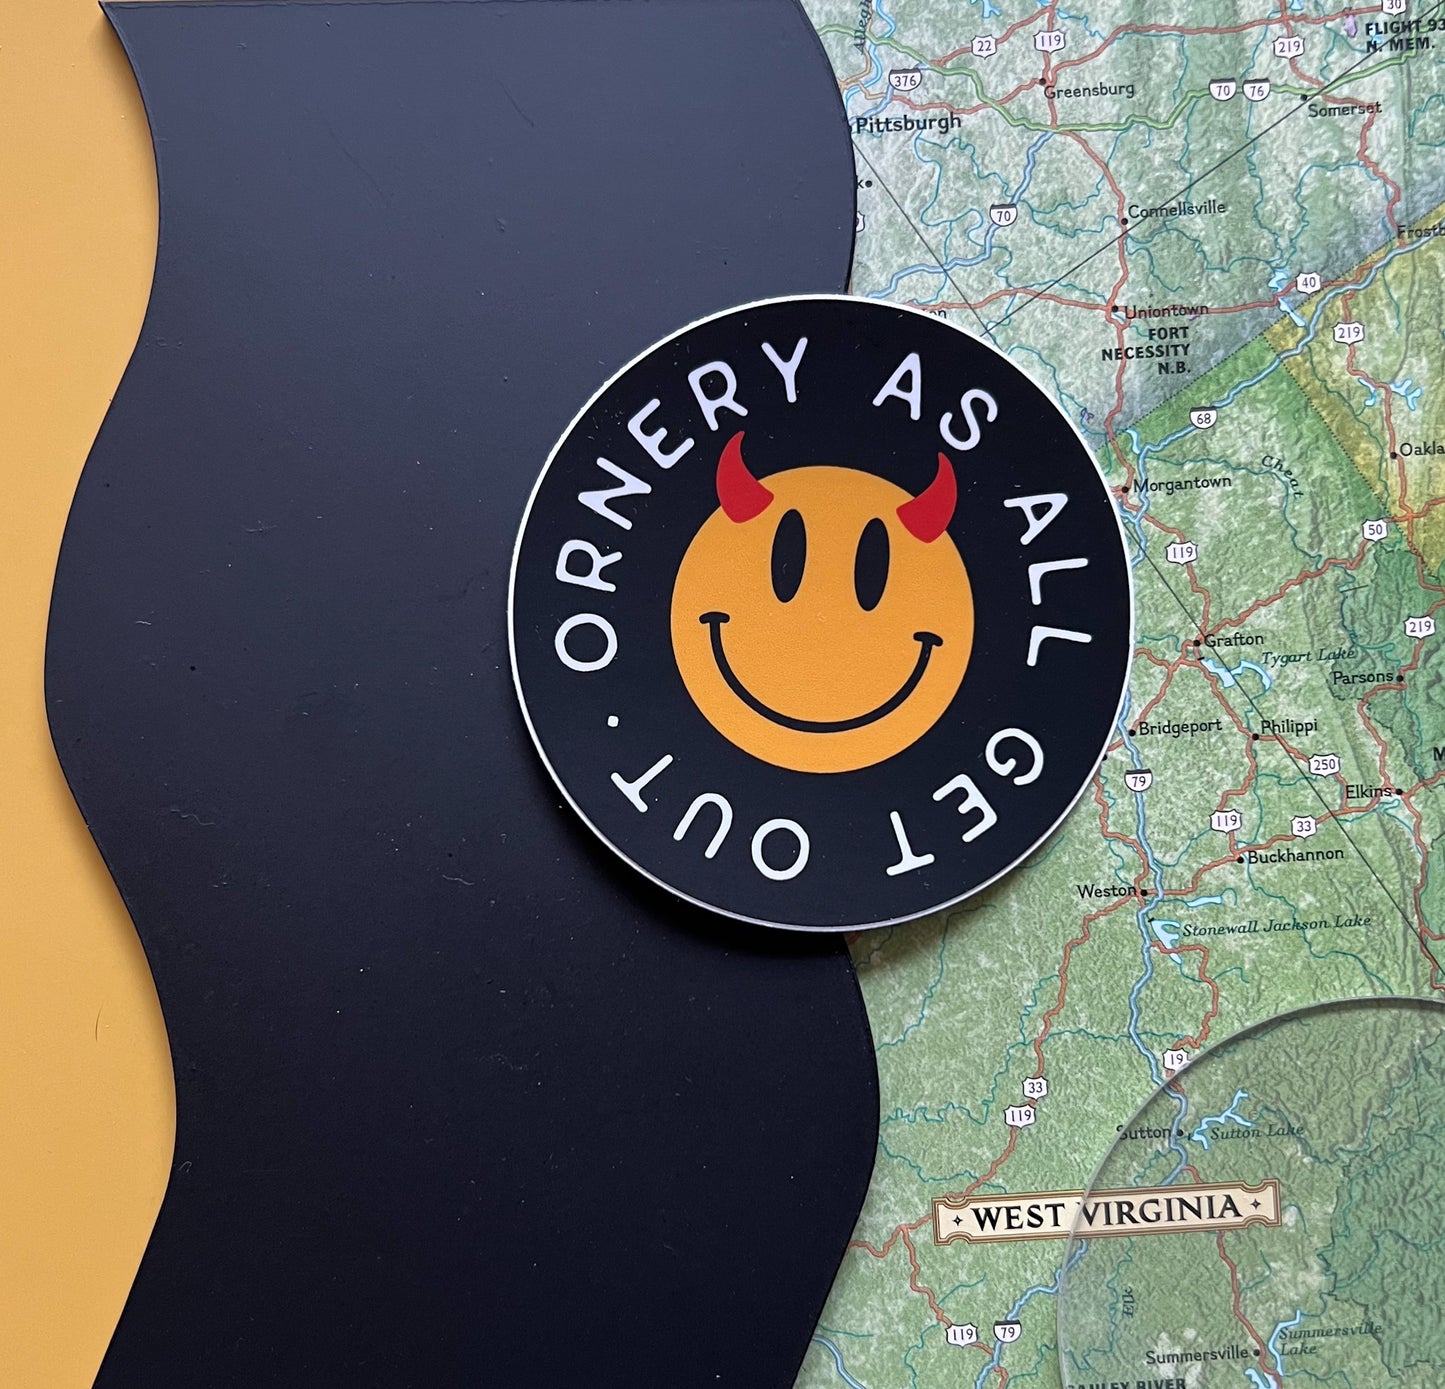 Ornery smiley // sticker